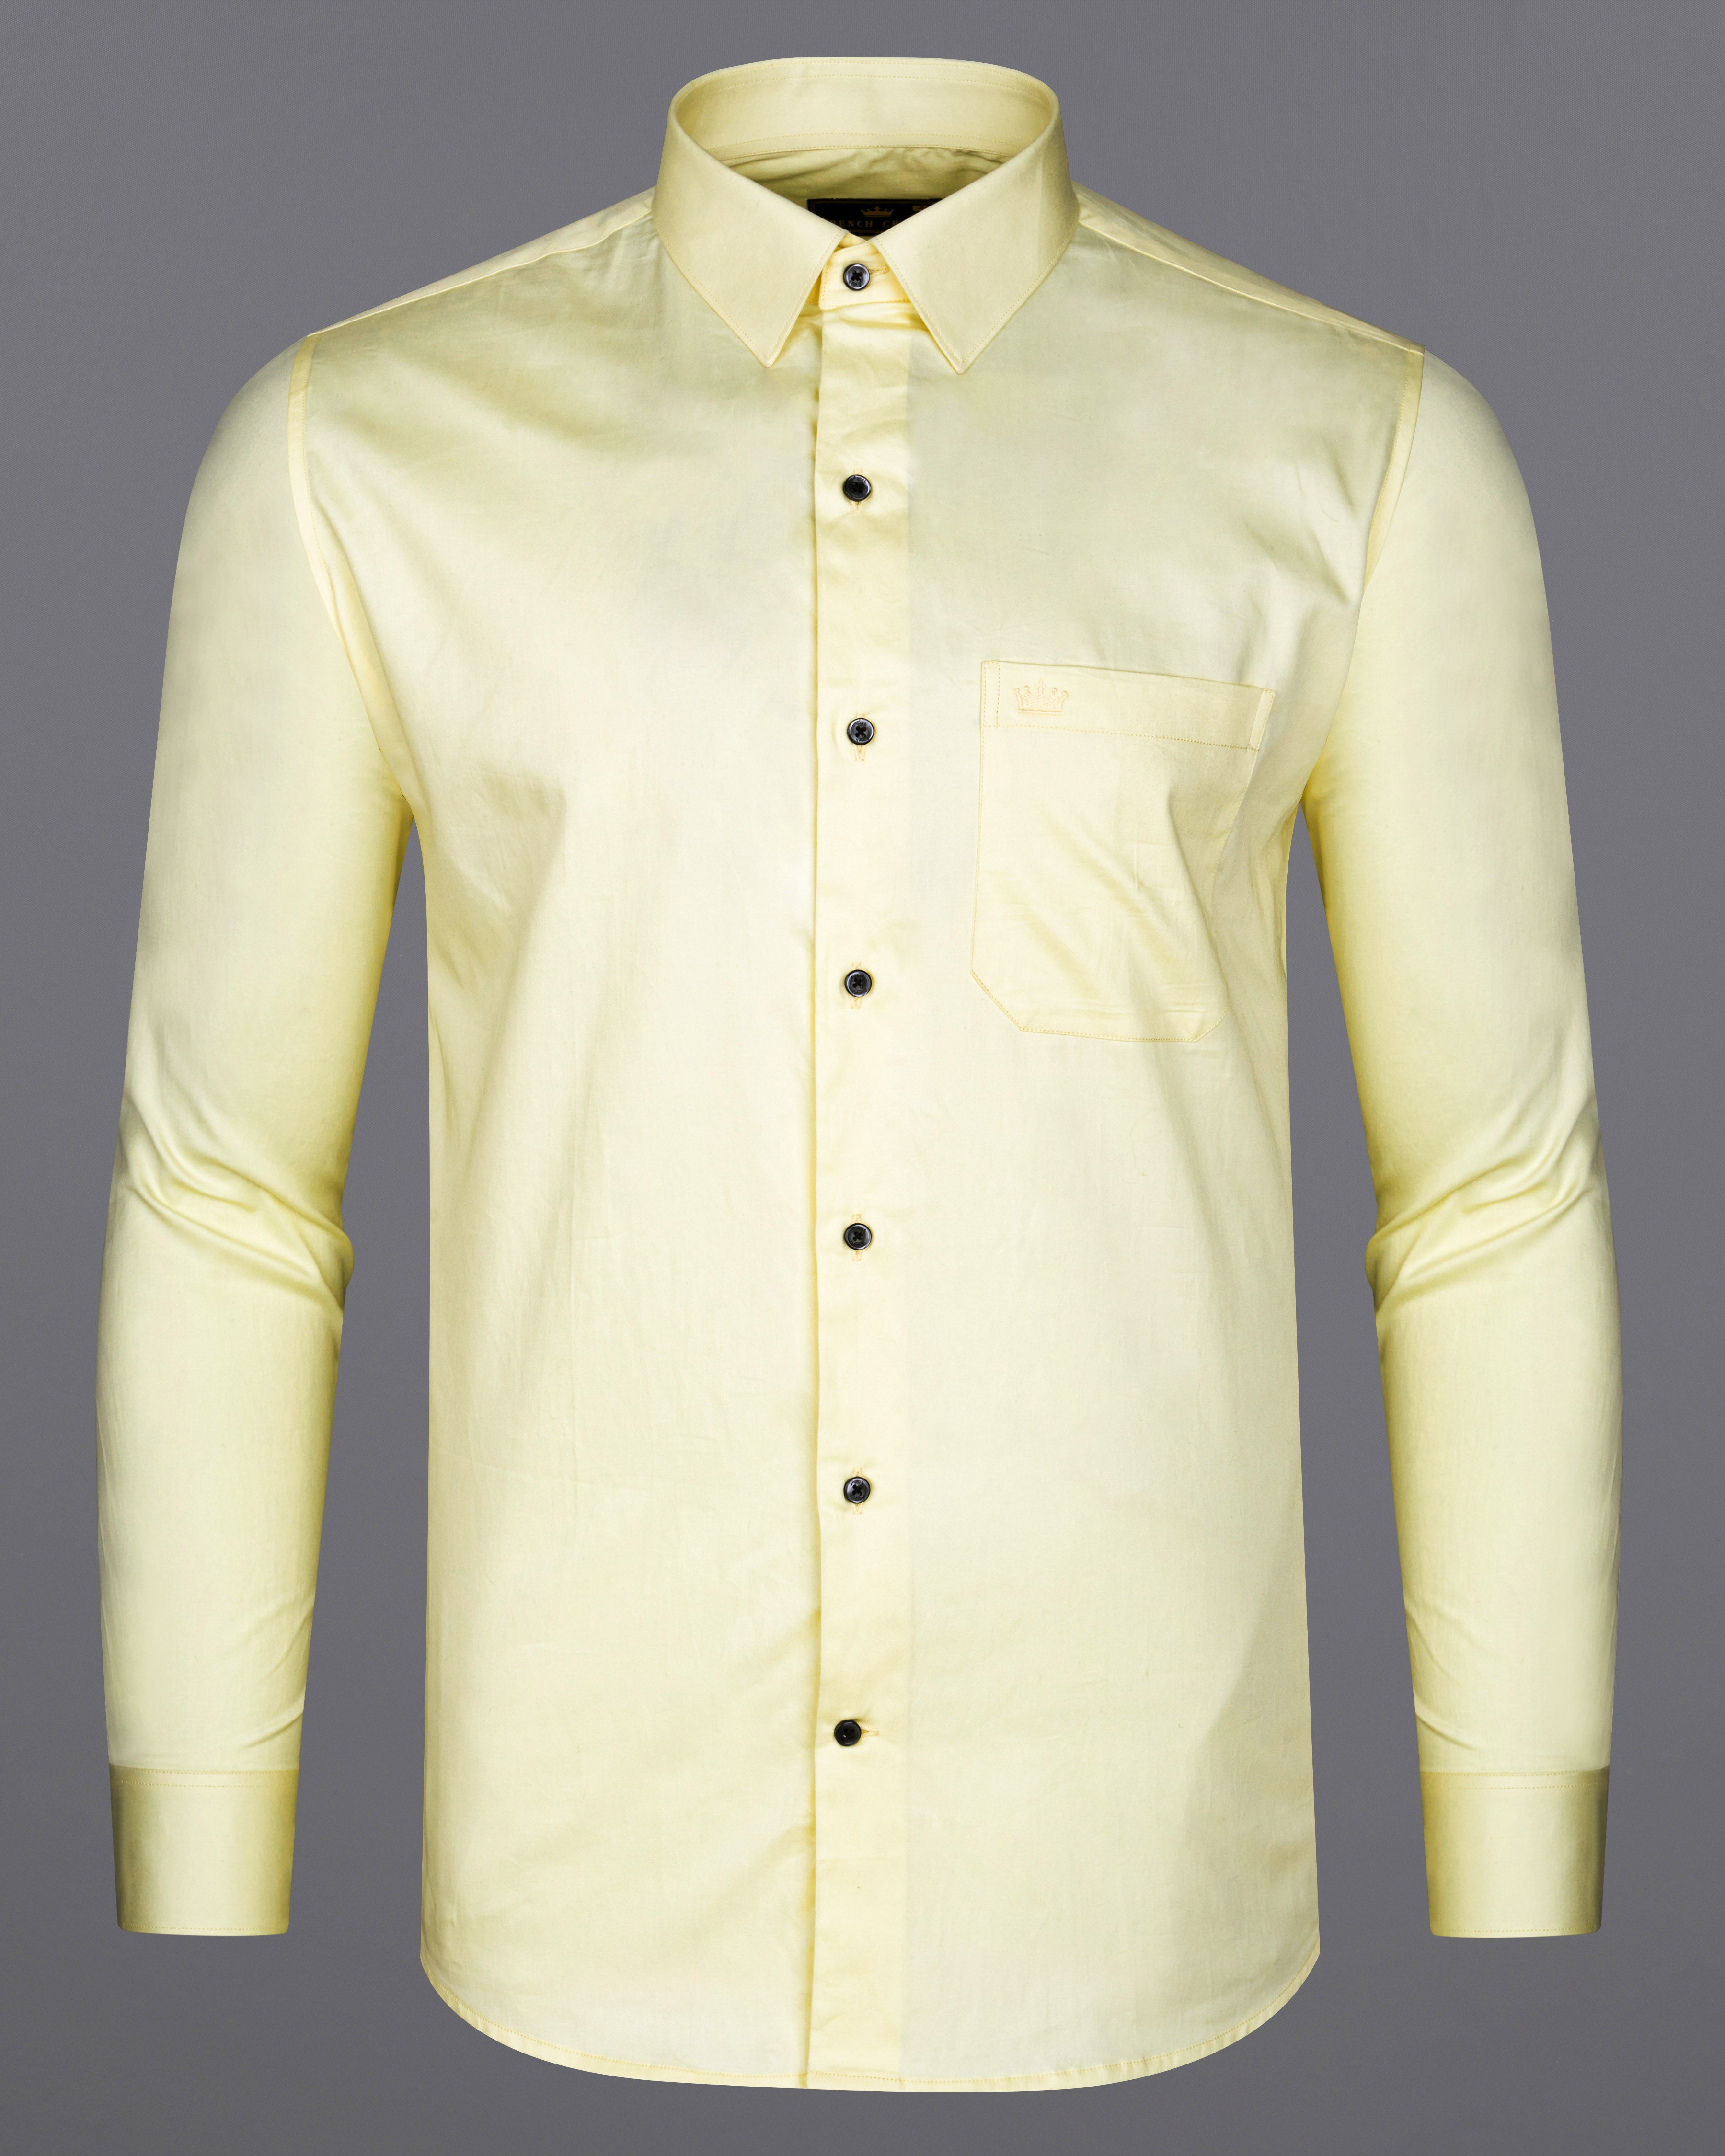 Oasis Yellow Subtle Sheen Super Soft Super Soft Premium Cotton Shirt 8697-BLK-38, 8697-BLK-H-38, 8697-BLK-39, 8697-BLK-H-39, 8697-BLK-40, 8697-BLK-H-40, 8697-BLK-42, 8697-BLK-H-42, 8697-BLK-44, 8697-BLK-H-44, 8697-BLK-46, 8697-BLK-H-46, 8697-BLK-48, 8697-BLK-H-48, 8697-BLK-50, 8697-BLK-H-50, 8697-BLK-52, 8697-BLK-H-52